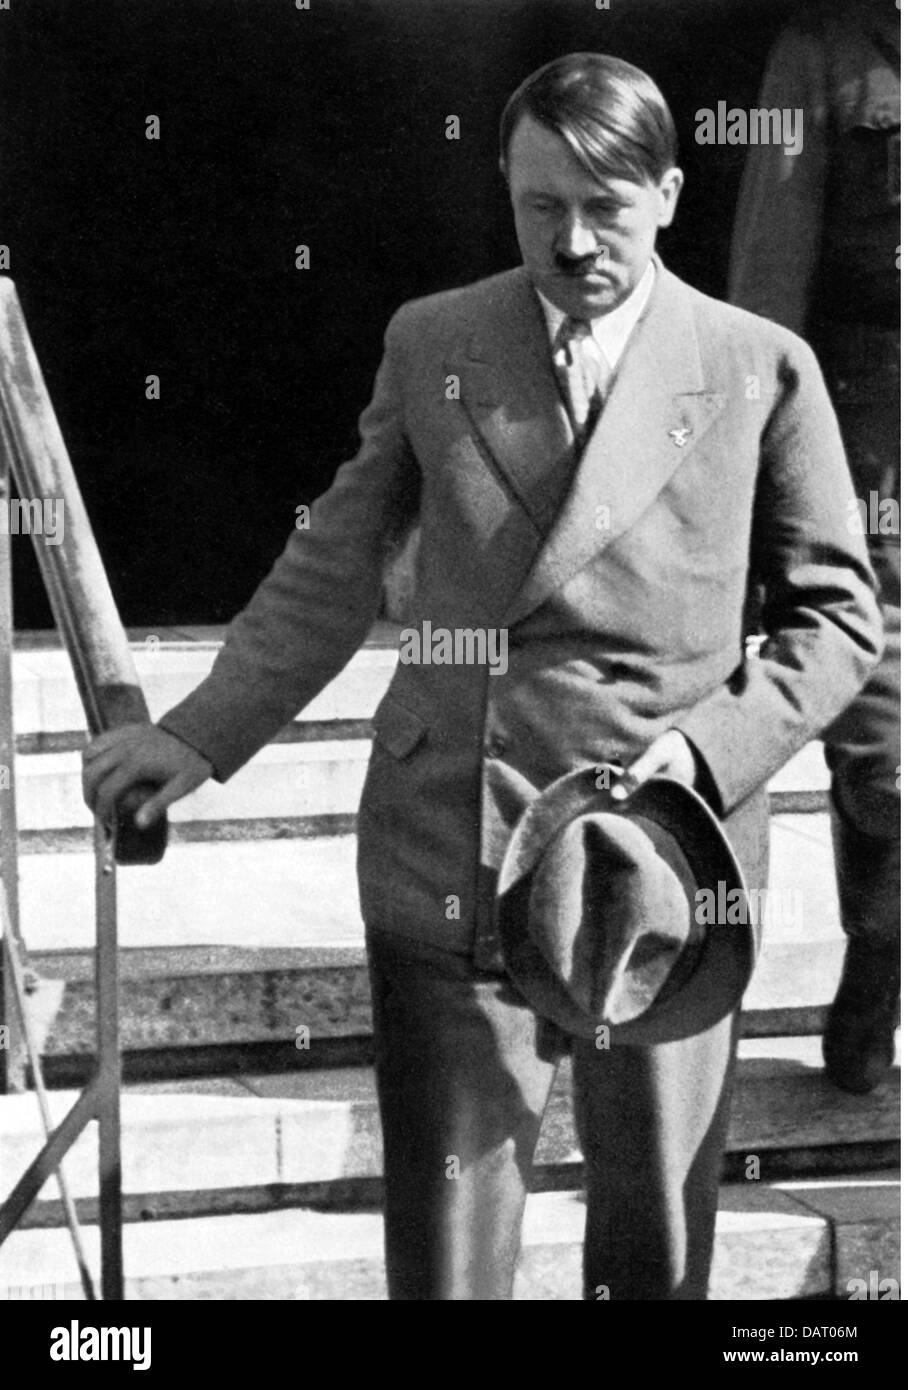 Hitler, Adolf, 20.4.1889 - 30.4.1945, politico tedesco (NSDAP), Cancelliere del Reich 30.1.1933 - 30.4.1945, dopo l'ultima visita al Presidente del Reich Paul von Hindenburg prima della sua morte, Berlino, luglio 1934, Foto Stock